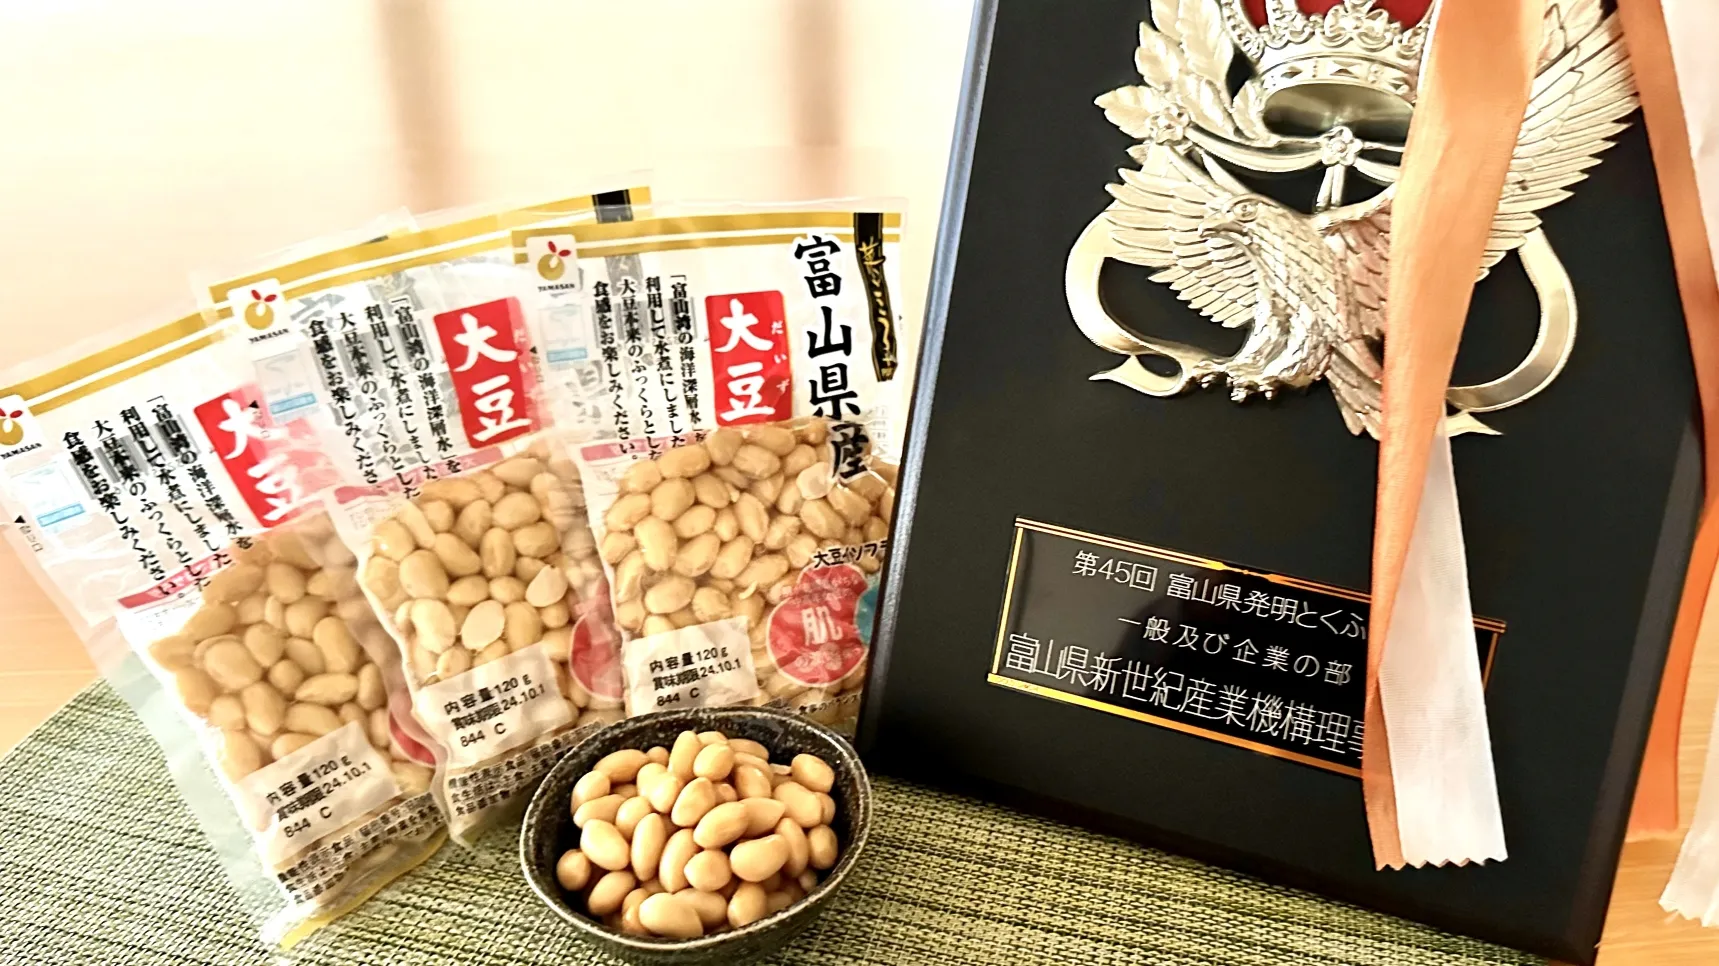 「富山県産大豆水煮」が、第45回「富山県発明とくふう展」で富山県新世紀産業機構理事長賞を受賞しました。